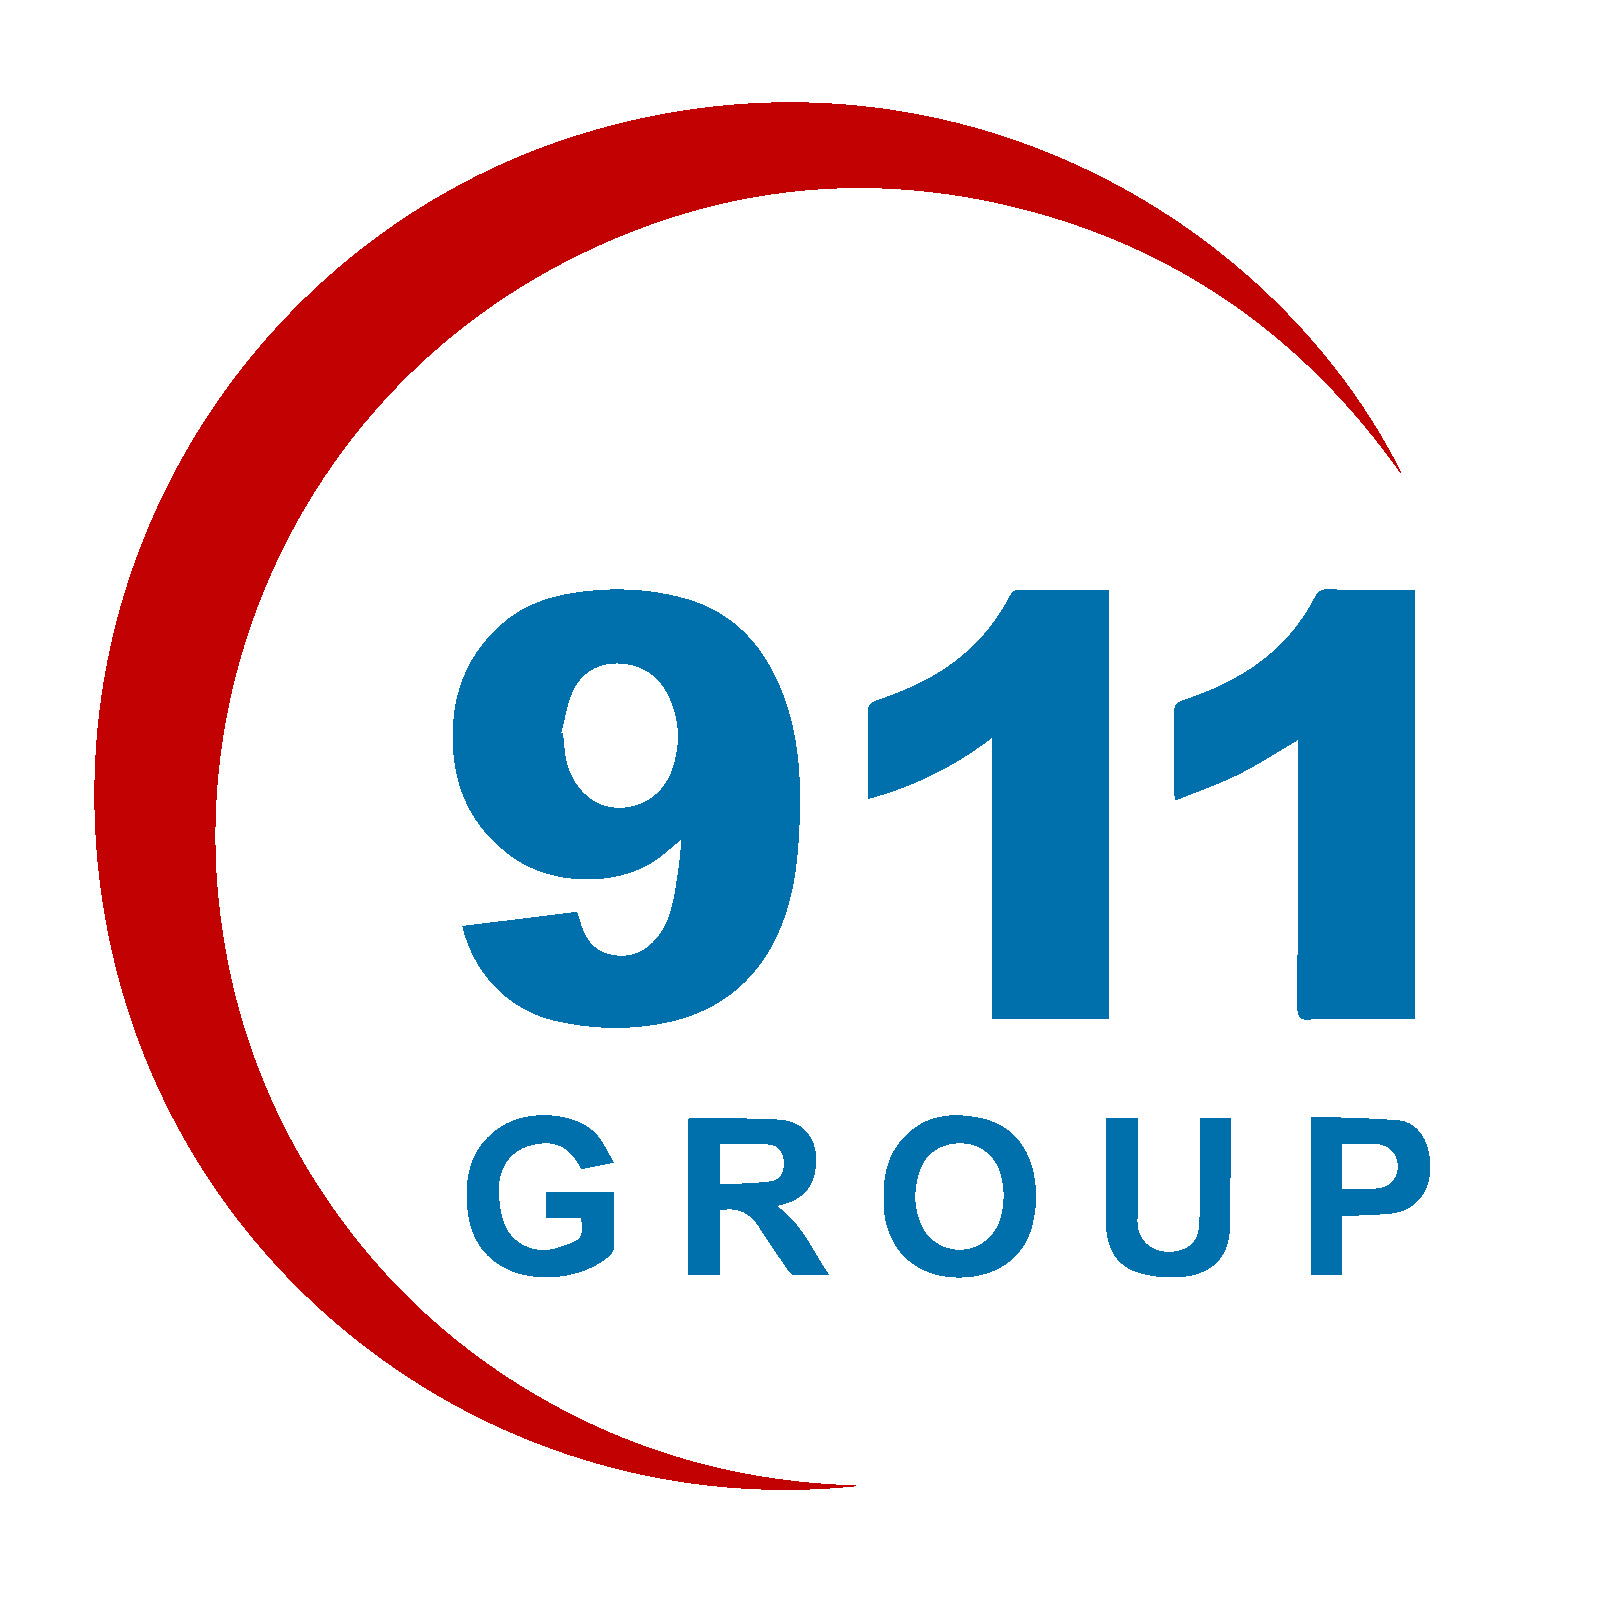 CBTT - Ban hành quy chế công bố thông tin Công ty Cổ phần Tập đoàn 911